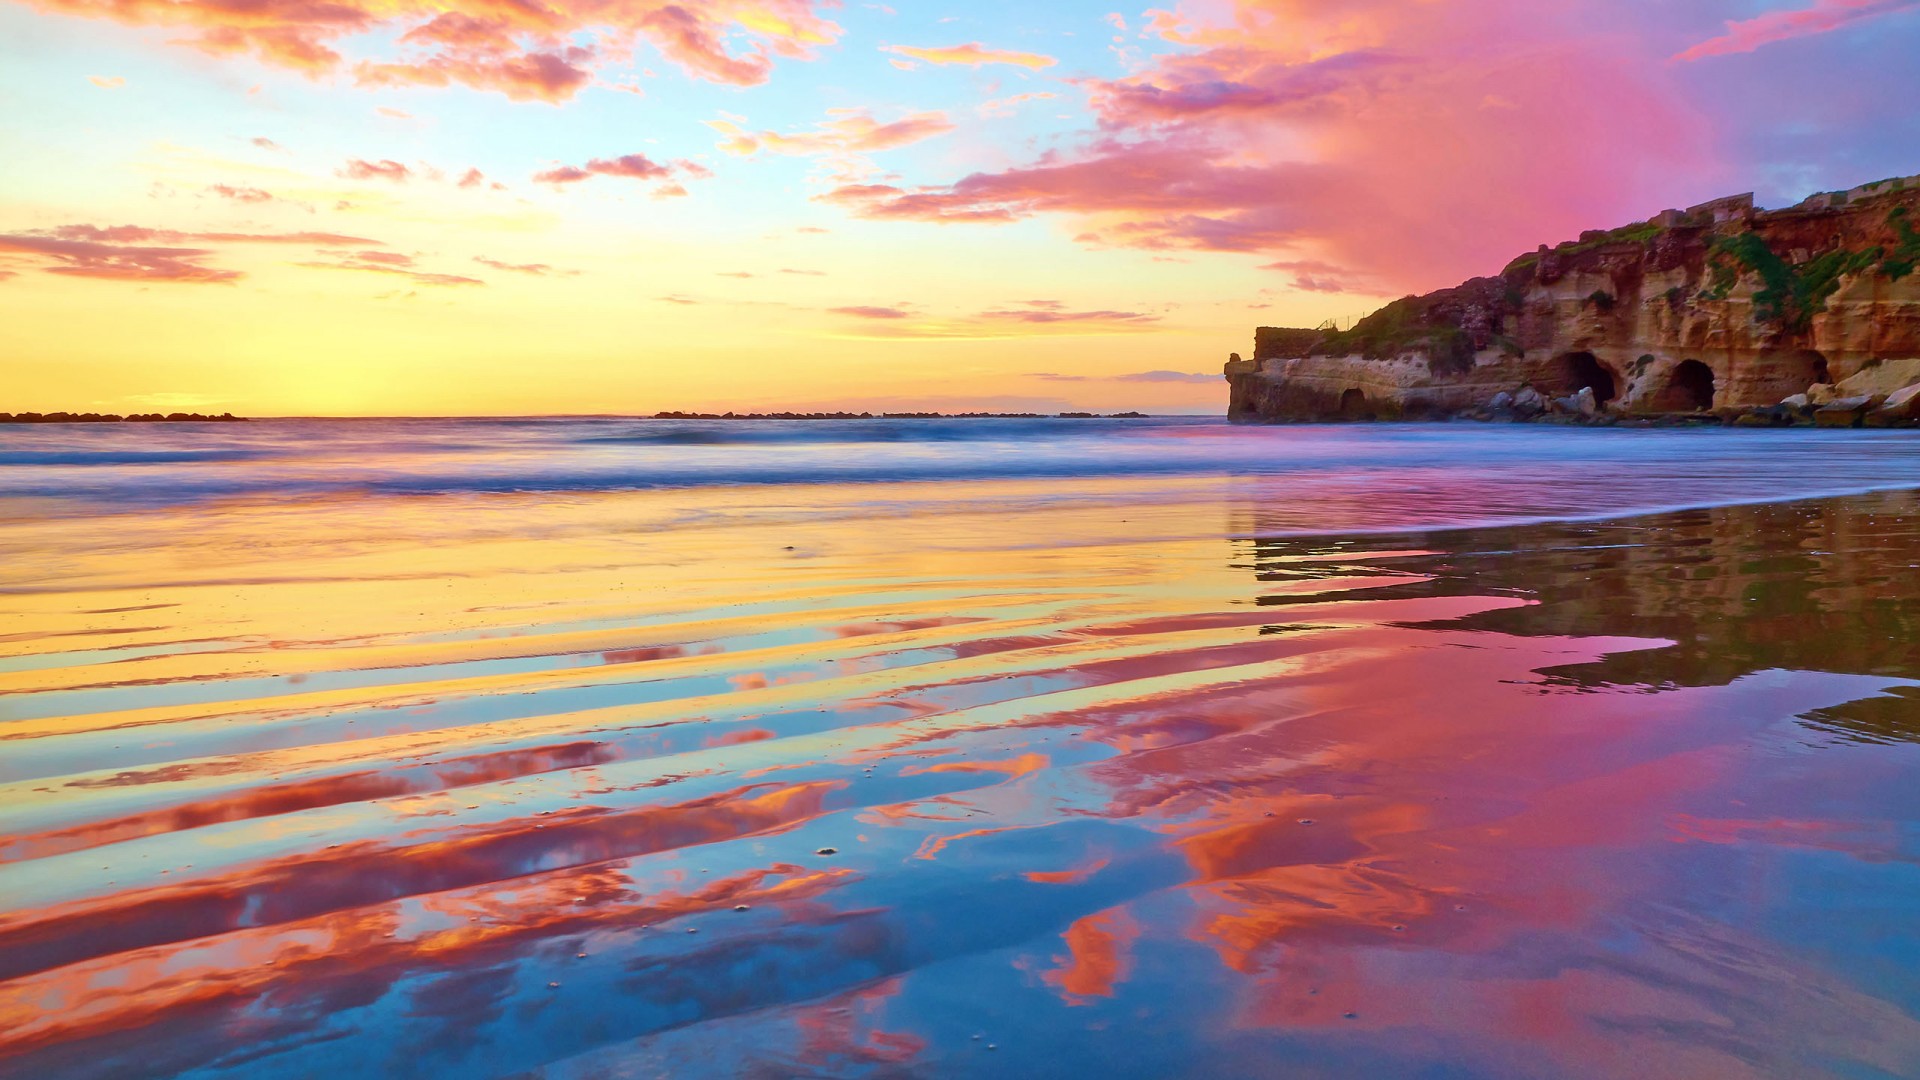 夕阳下的大海图片素材 高清大海夕阳壁纸